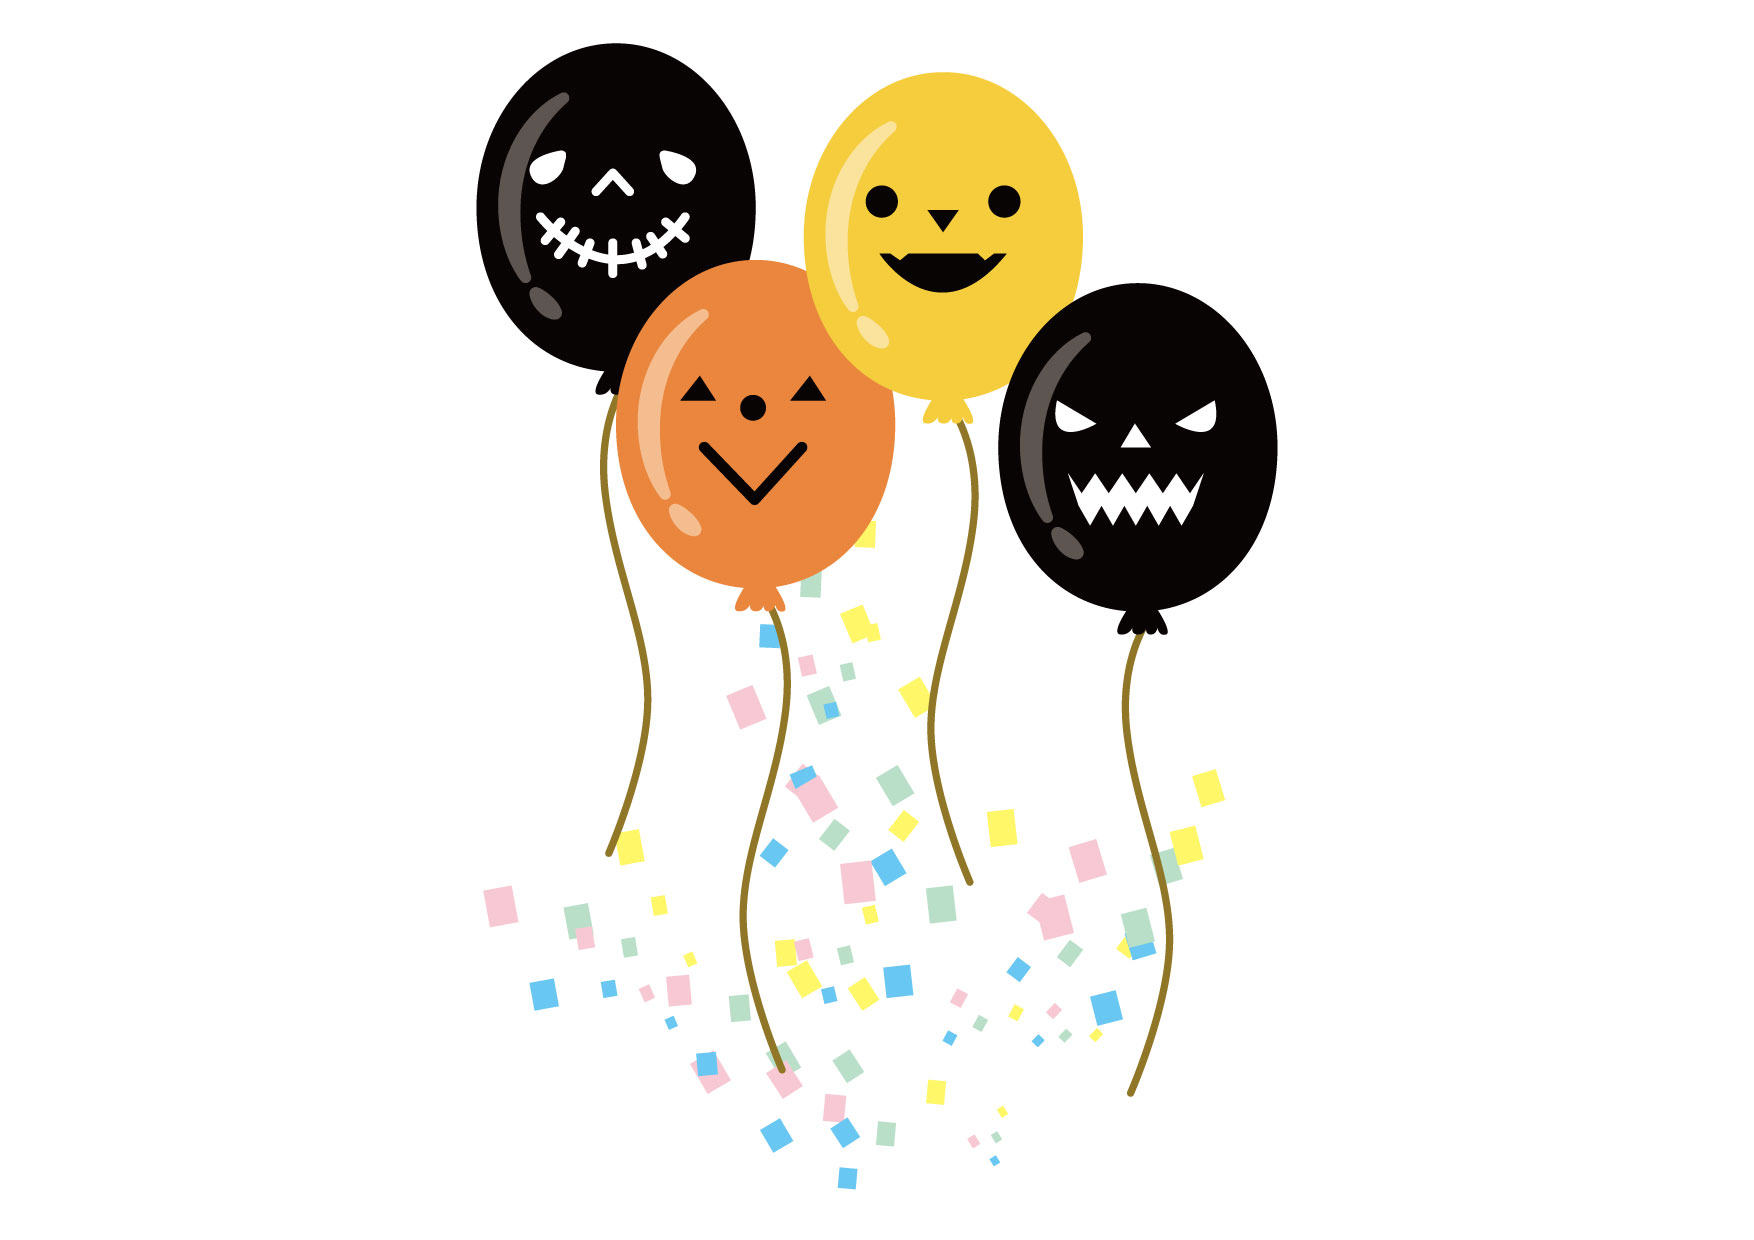 可愛いイラスト無料 ハロウィン 風船 黒 オレンジ Free Illustration Halloween Balloon Black Orange 公式 イラスト素材サイト イラストダウンロード